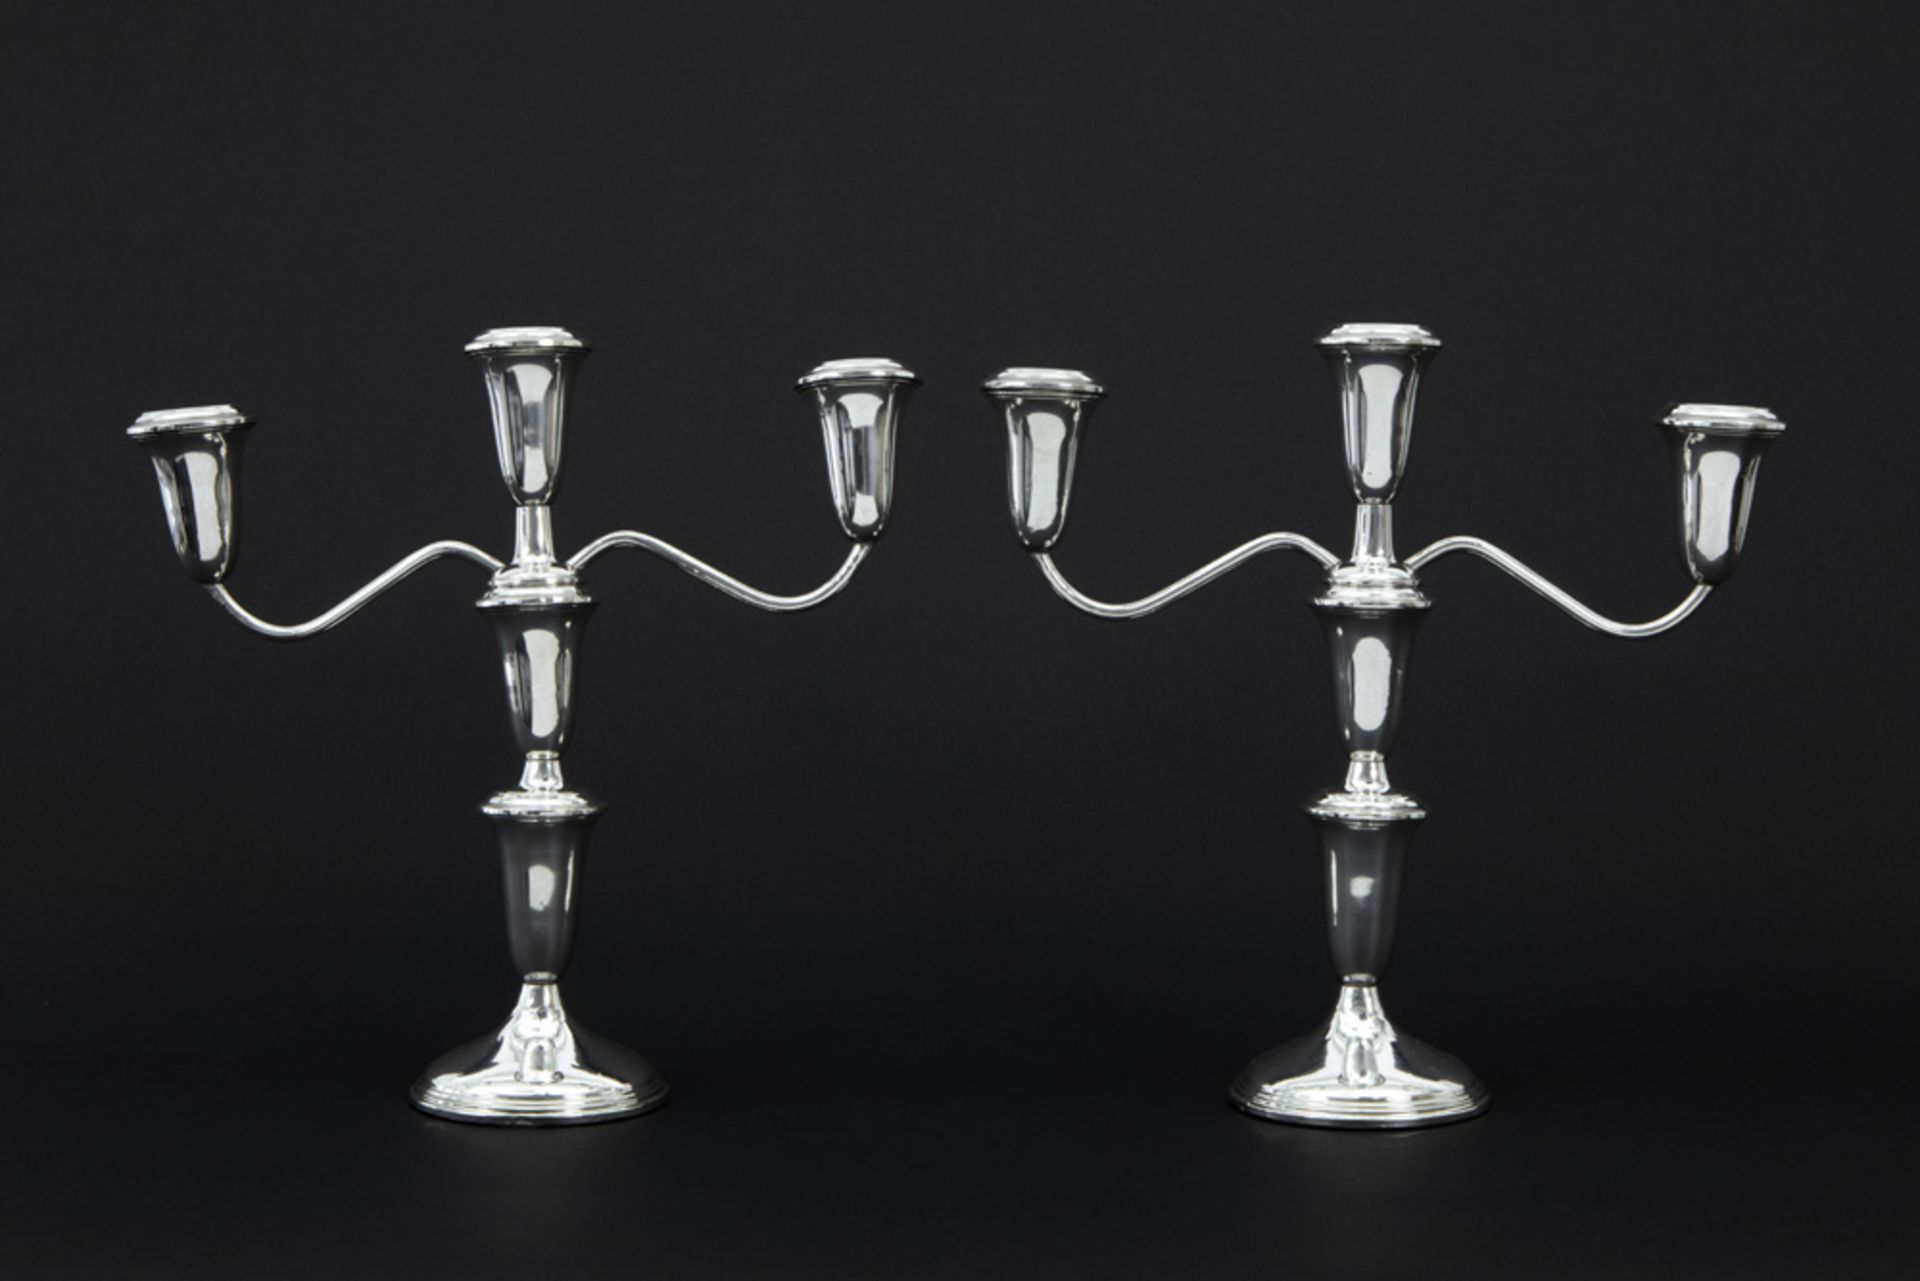 pair of American candelabras in marked silver - signed||EMPIRE paar Amerikaanse tafelkandelaars